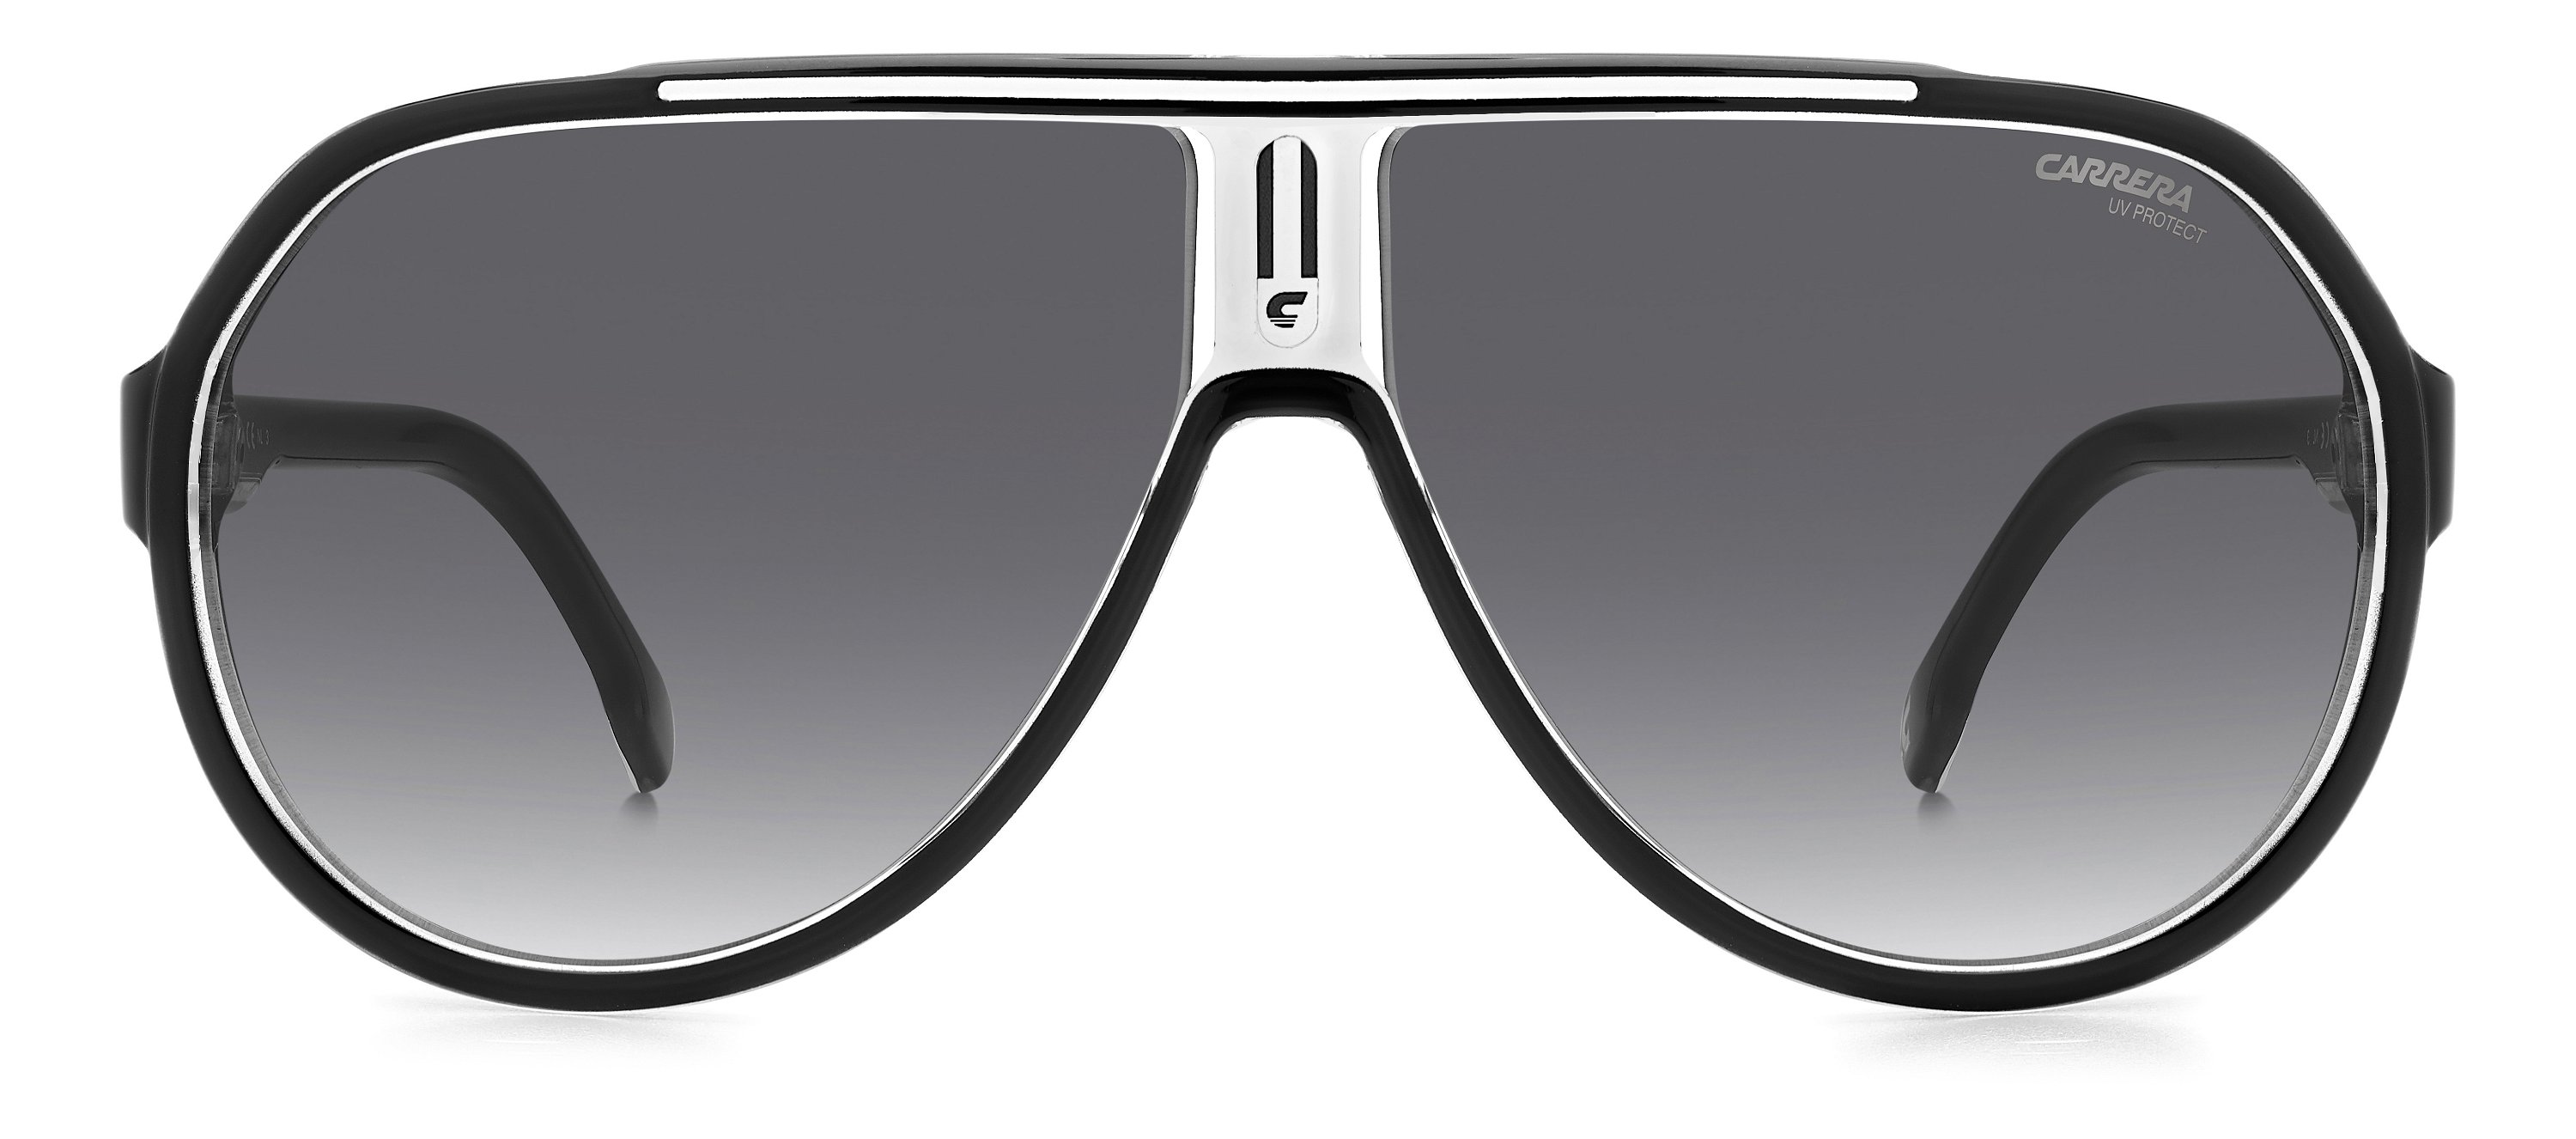 Carrera Sonnenbrille 1057/S 80S schwarz weiß